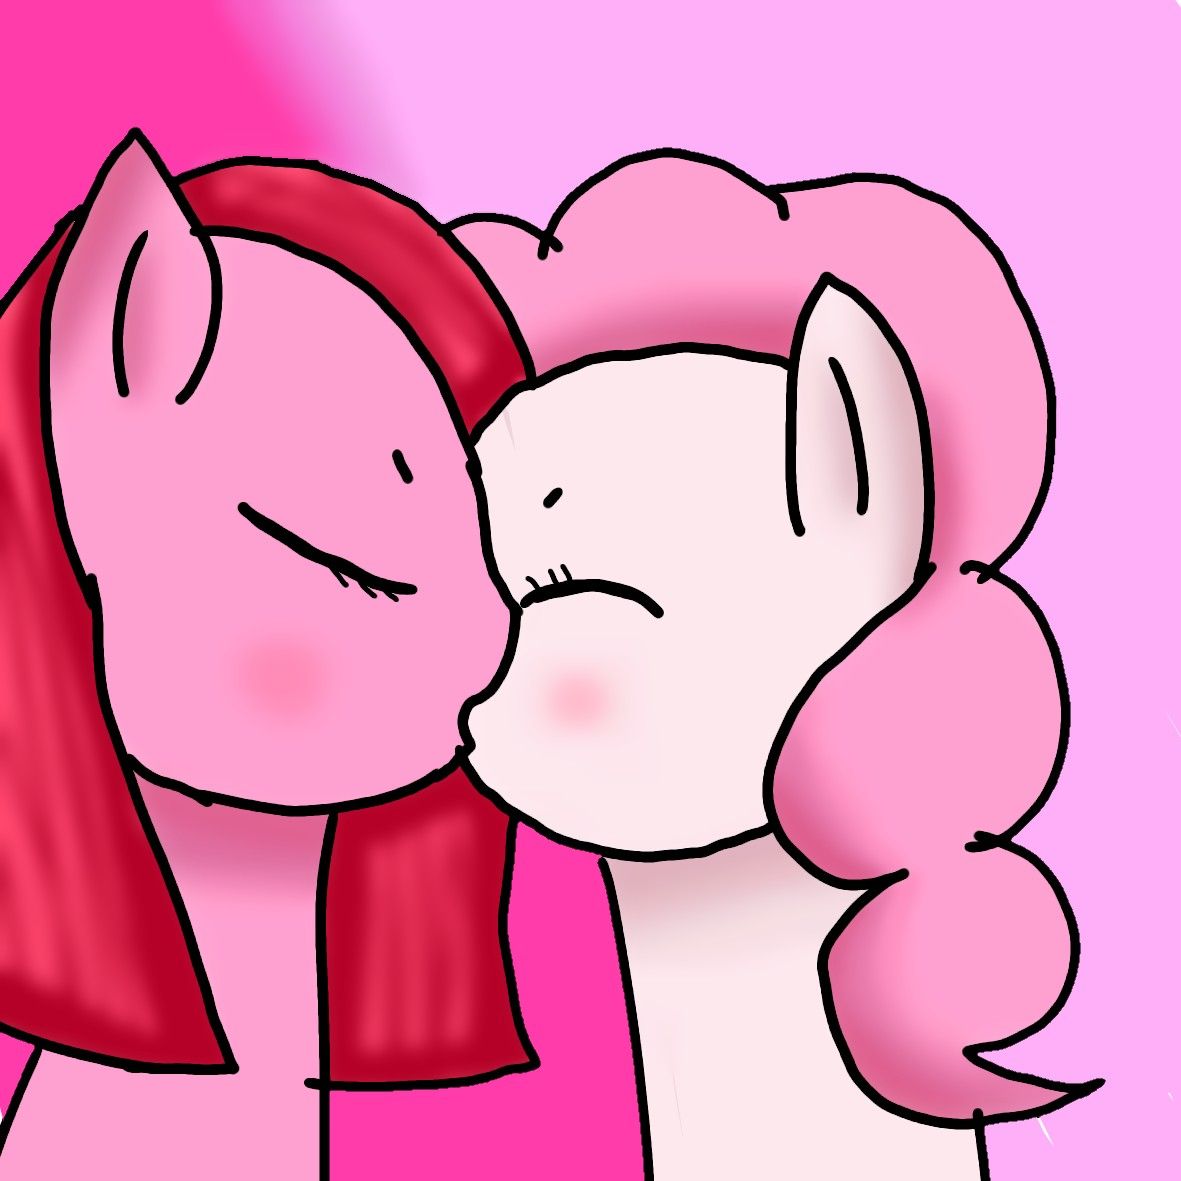 Pinkis Cupcake And Pinkie Pie Kissing Lol